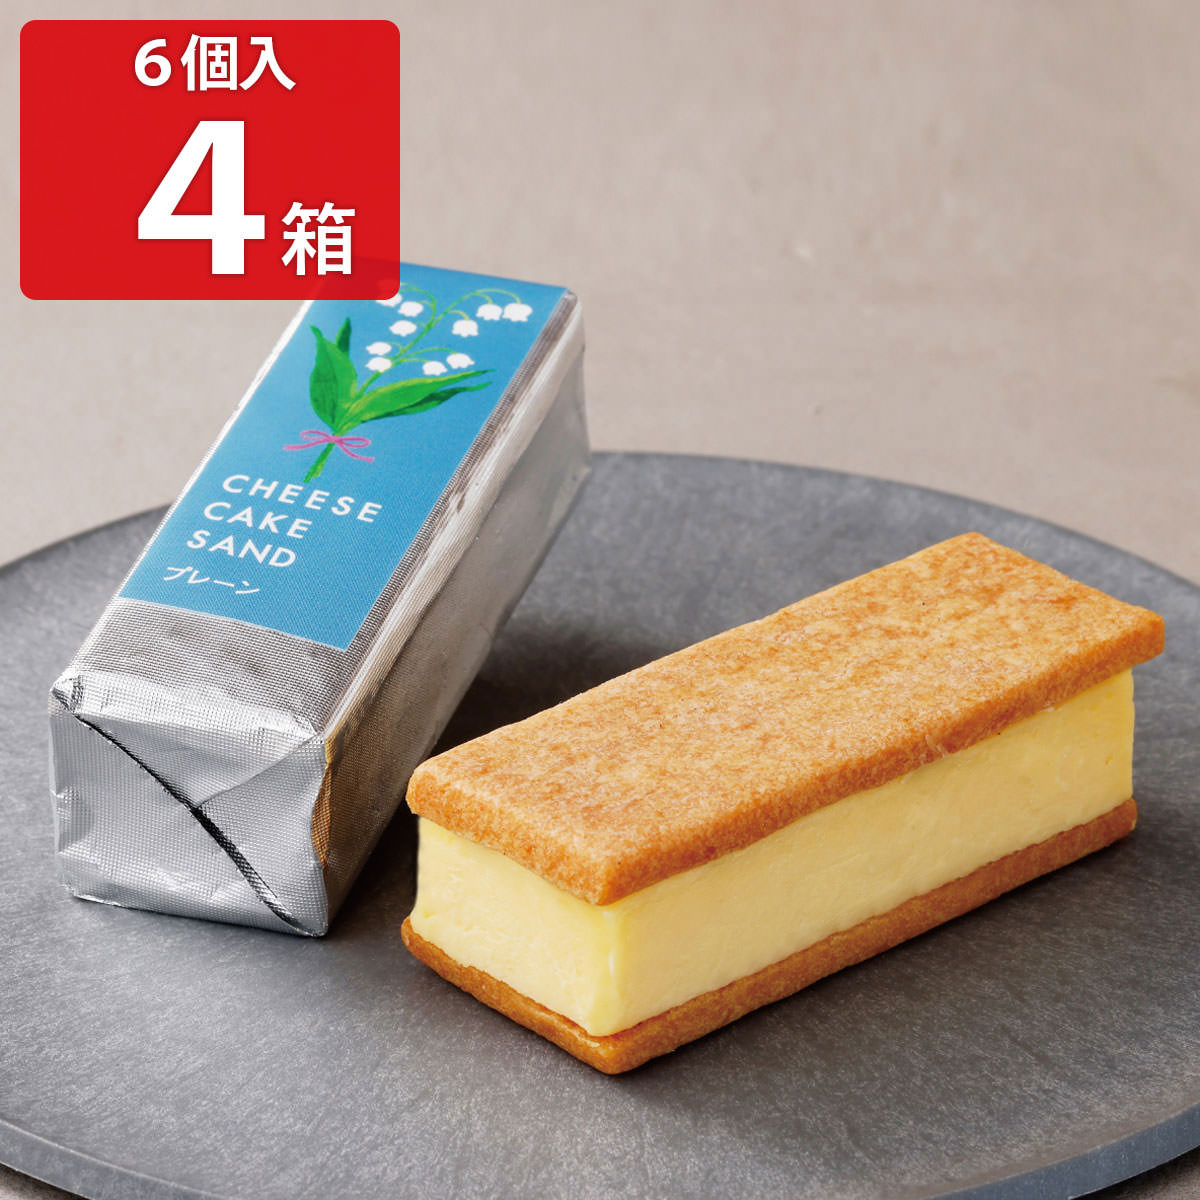 チーズケーキサンド -CHEESECAKE SAND- プレーン 6個入4箱セット クッキーサンド 洋菓子 スイーツ デザート おやつ ケーキ お菓子